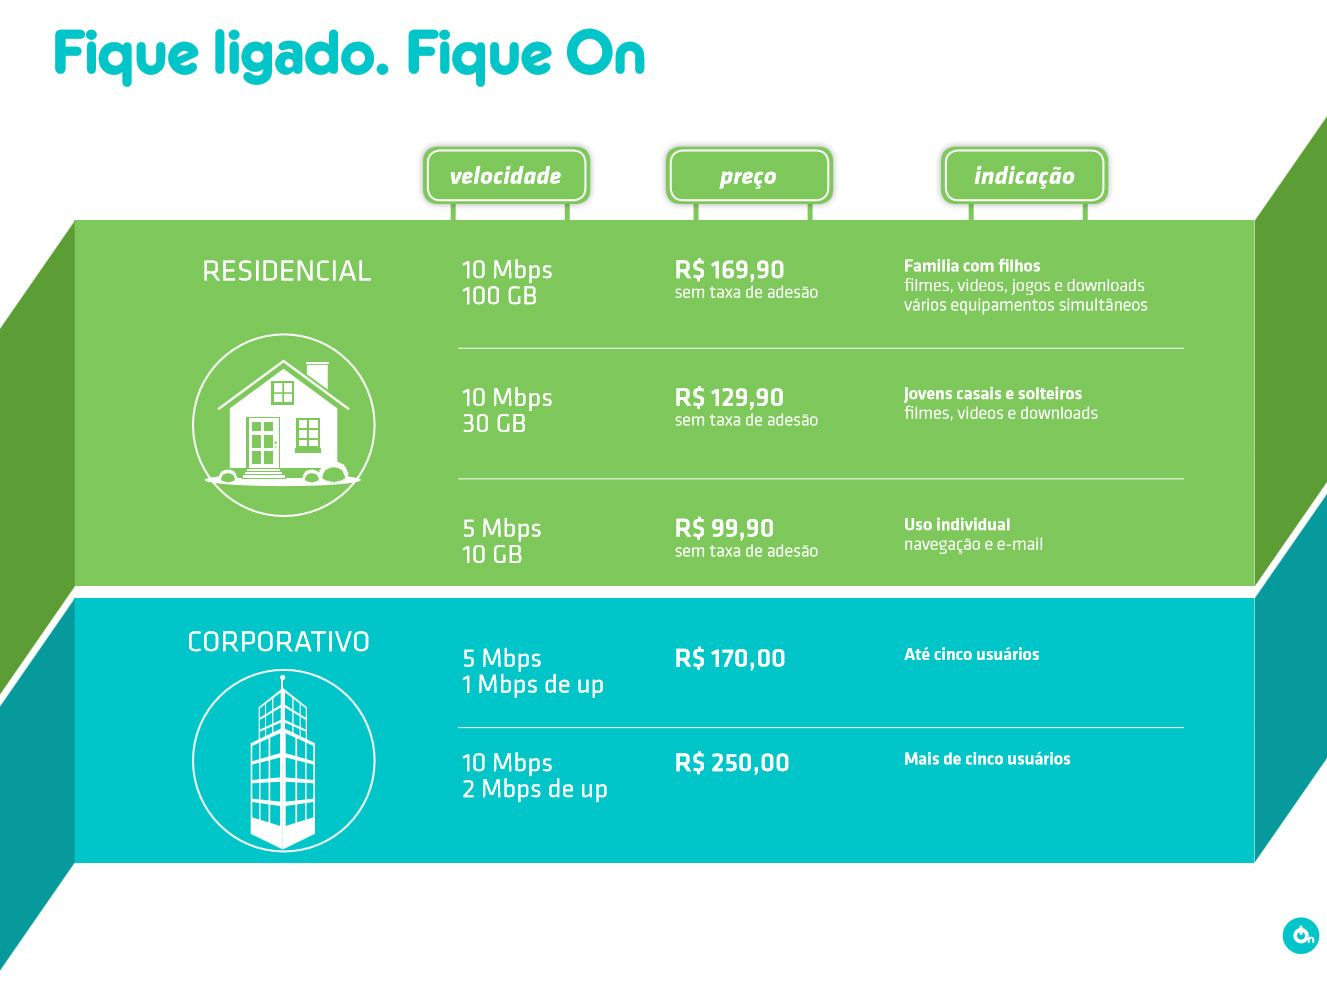 On Telecom anuncia 4G fixo no interior de São Paulo